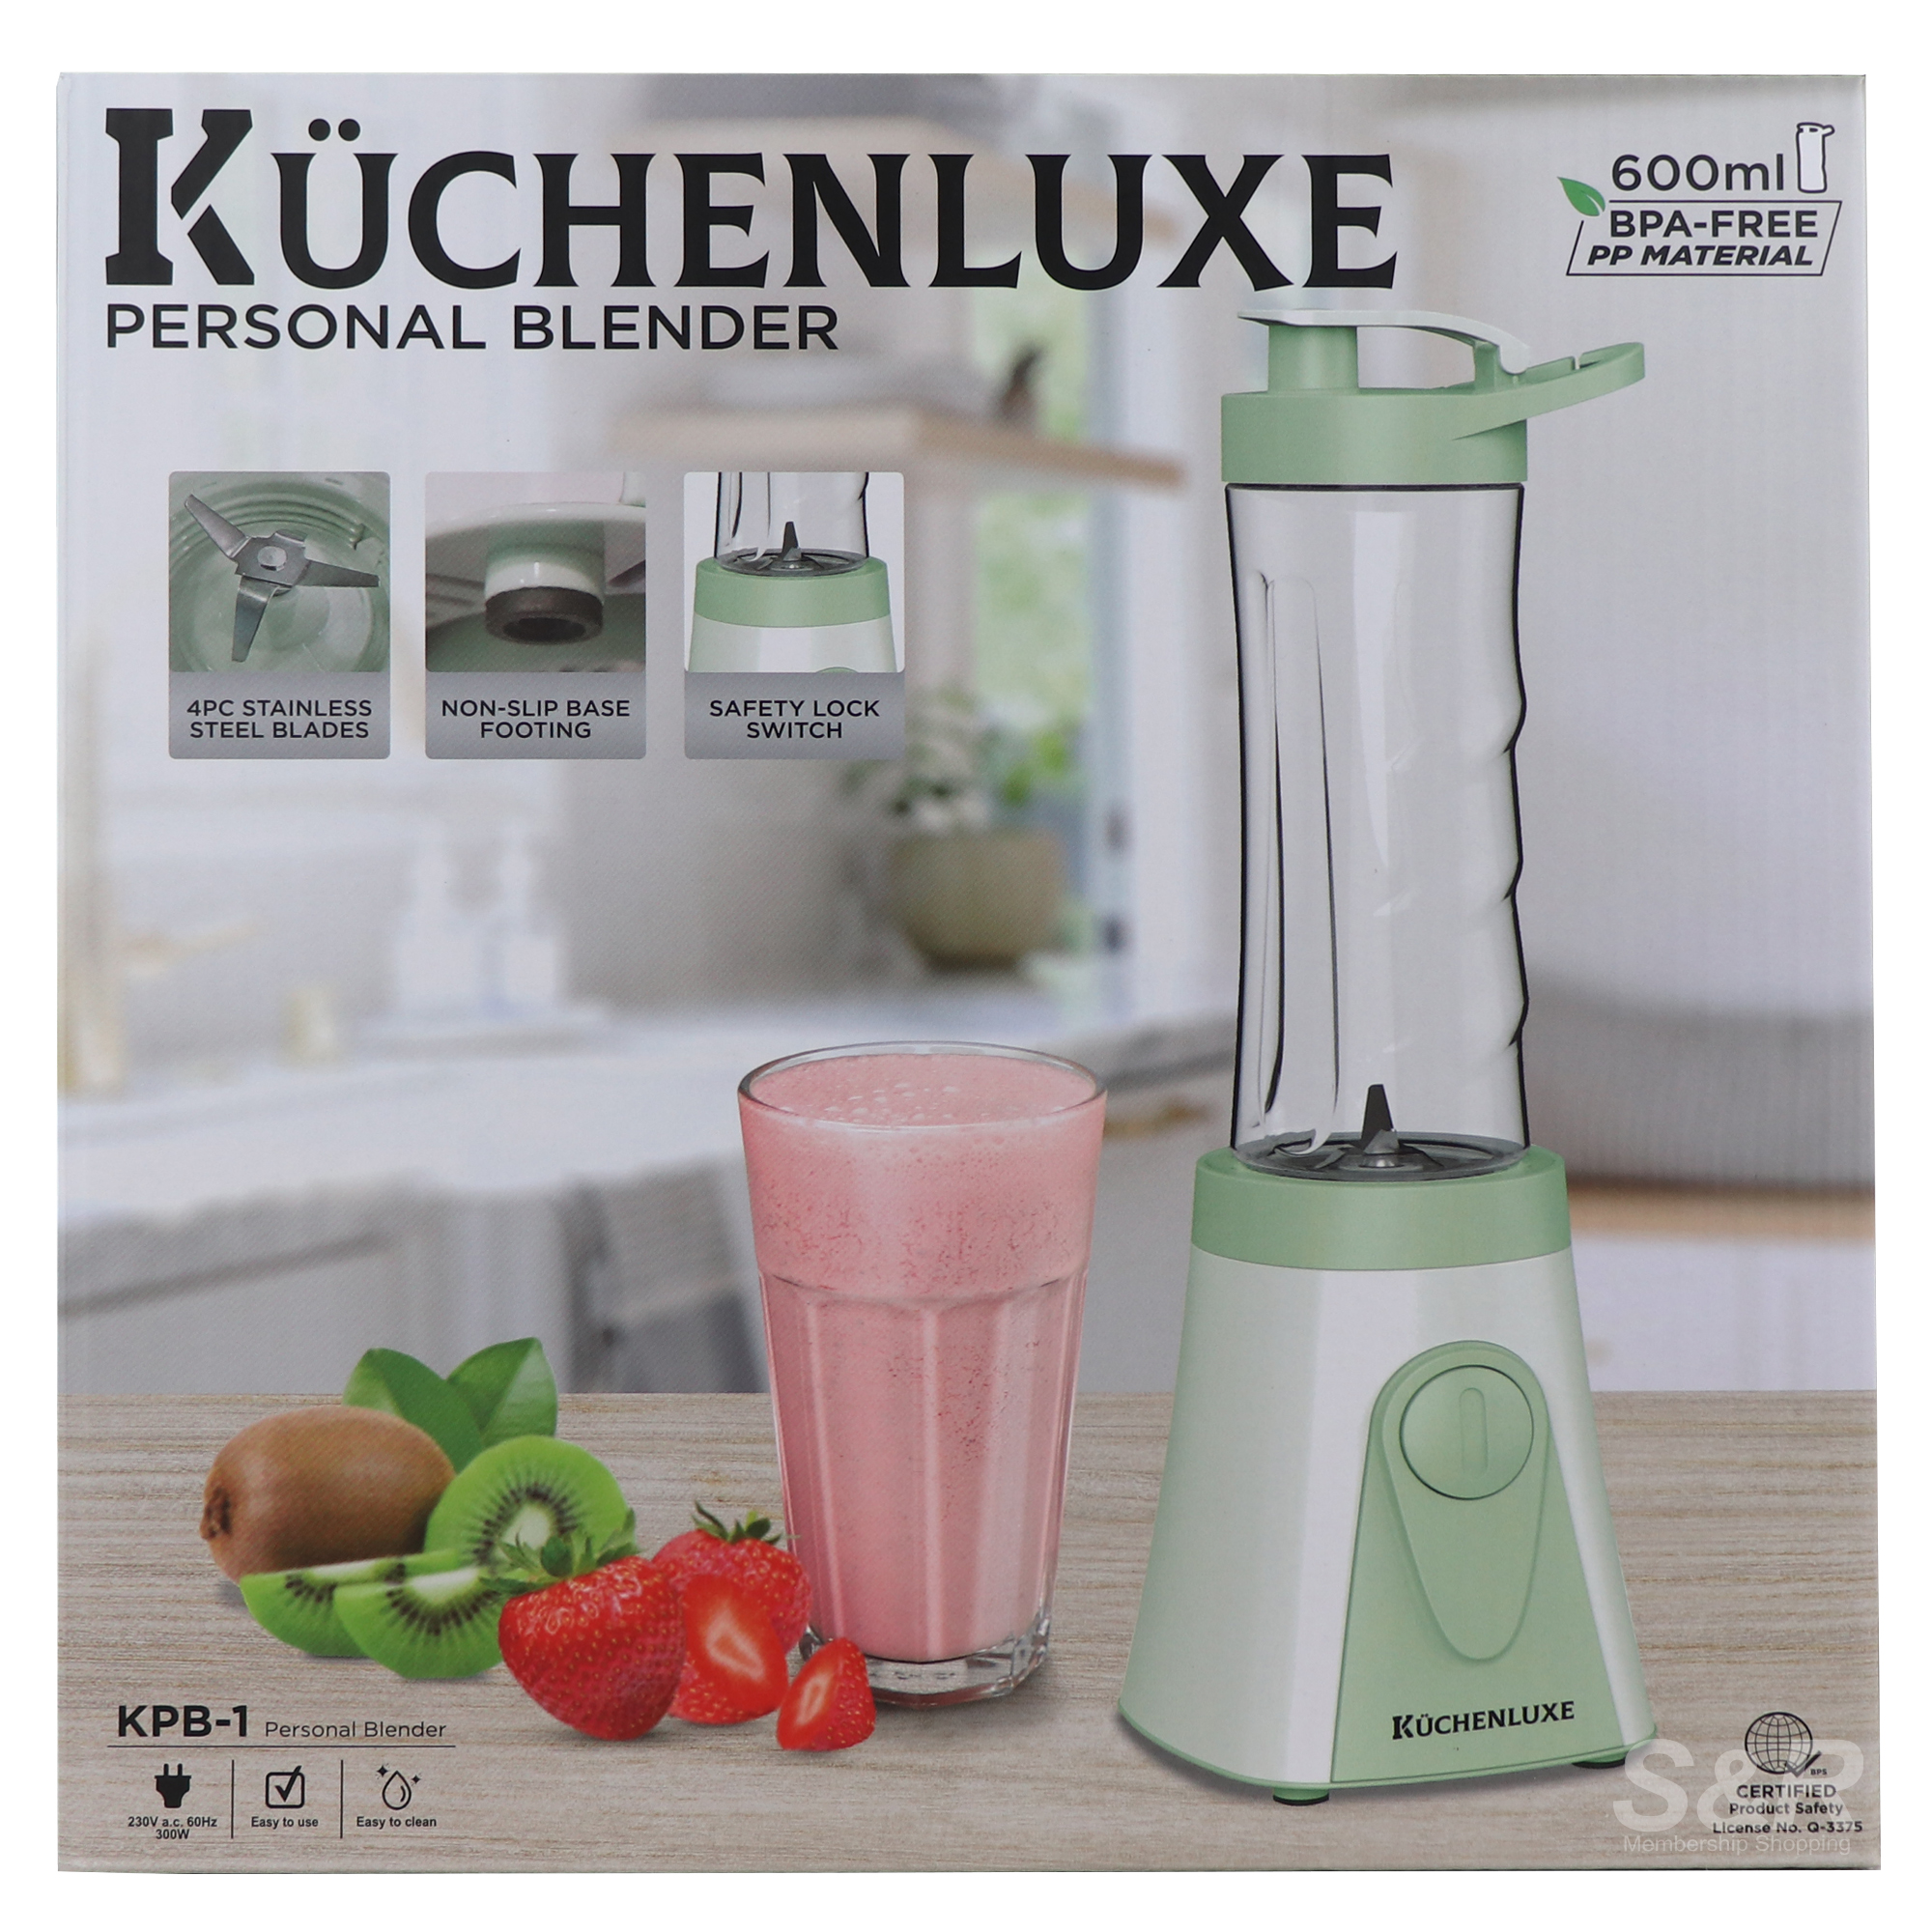 Kuchenluxe Personal Blender KPB-1